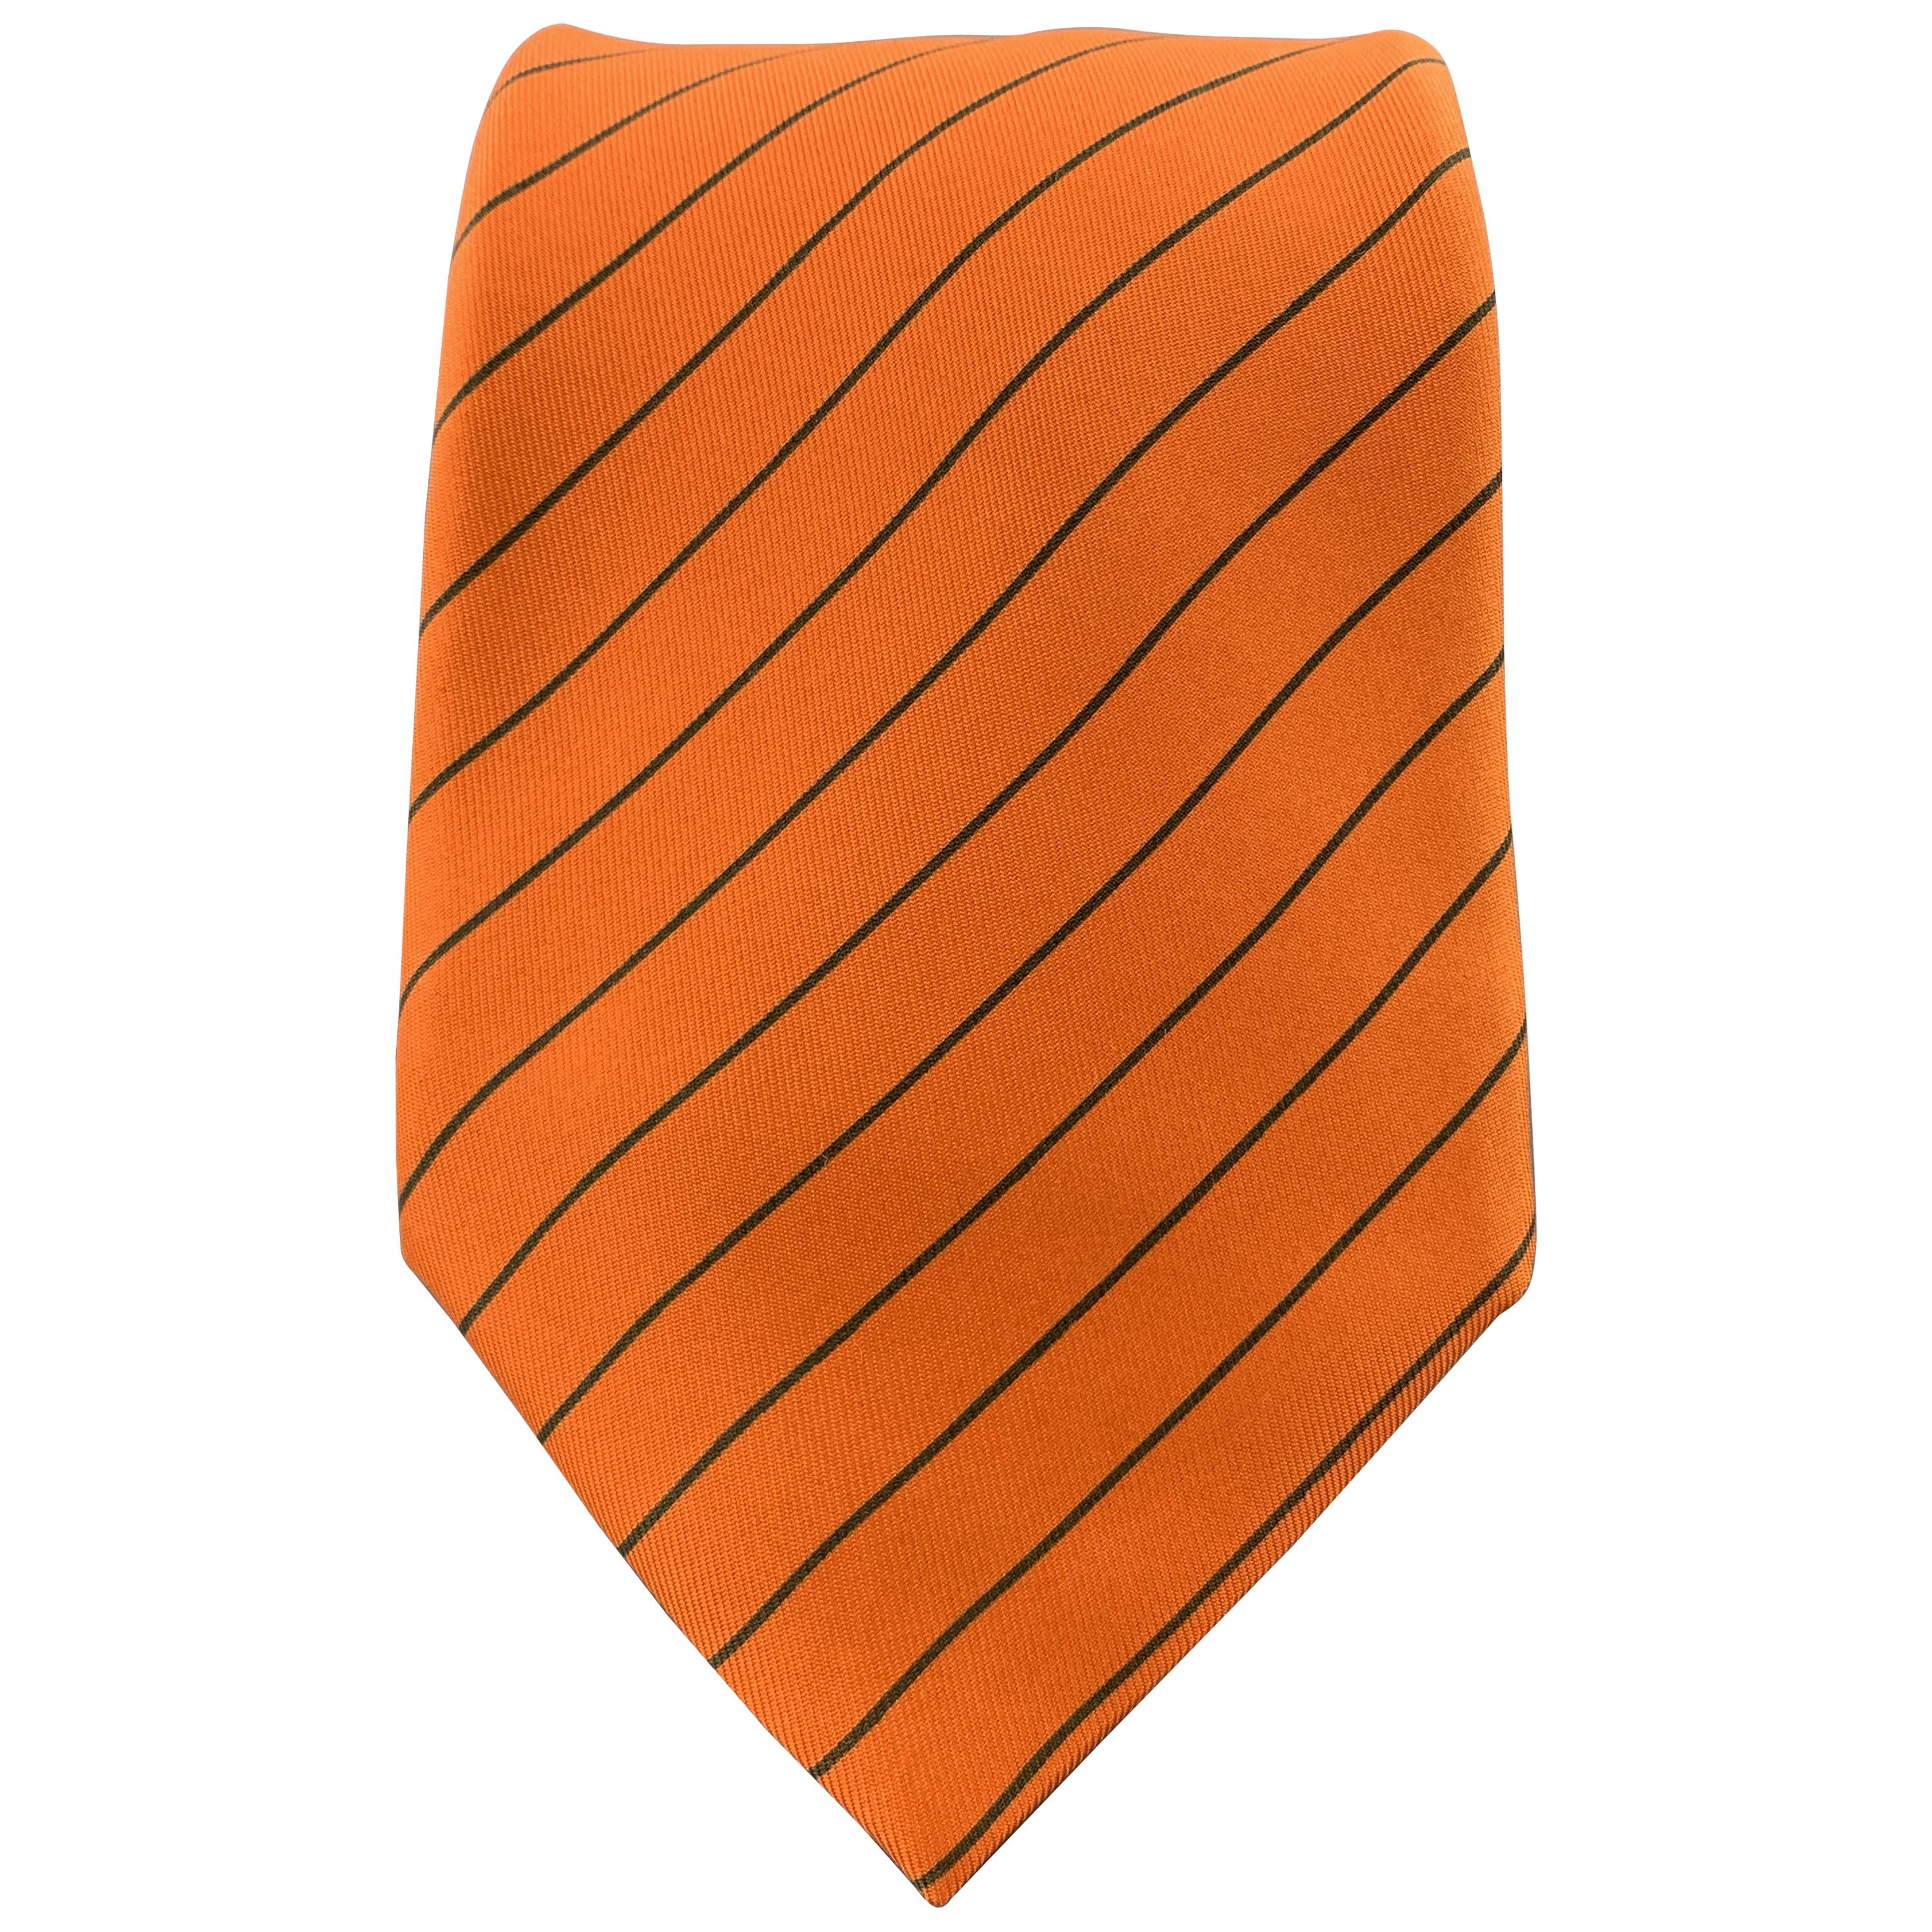 HERMES Orange & Charcoal Diagonal Striped Silk Tie 5041 PA